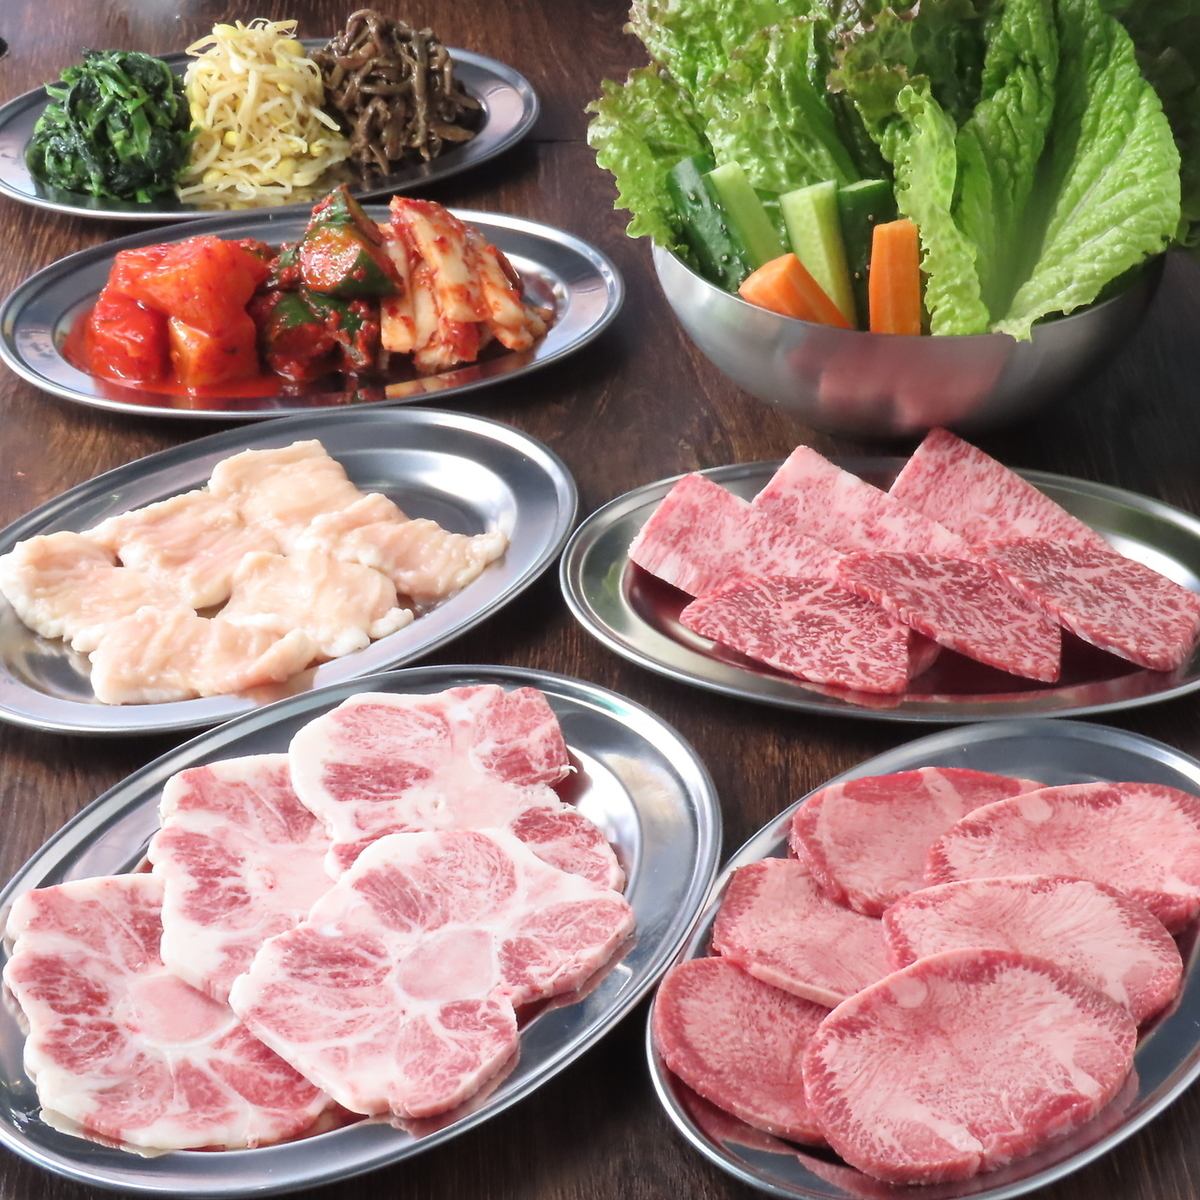 [從東長崎站南口步行約1分鐘]提供新鮮內臟和韓國燒酒的烤肉吧♪